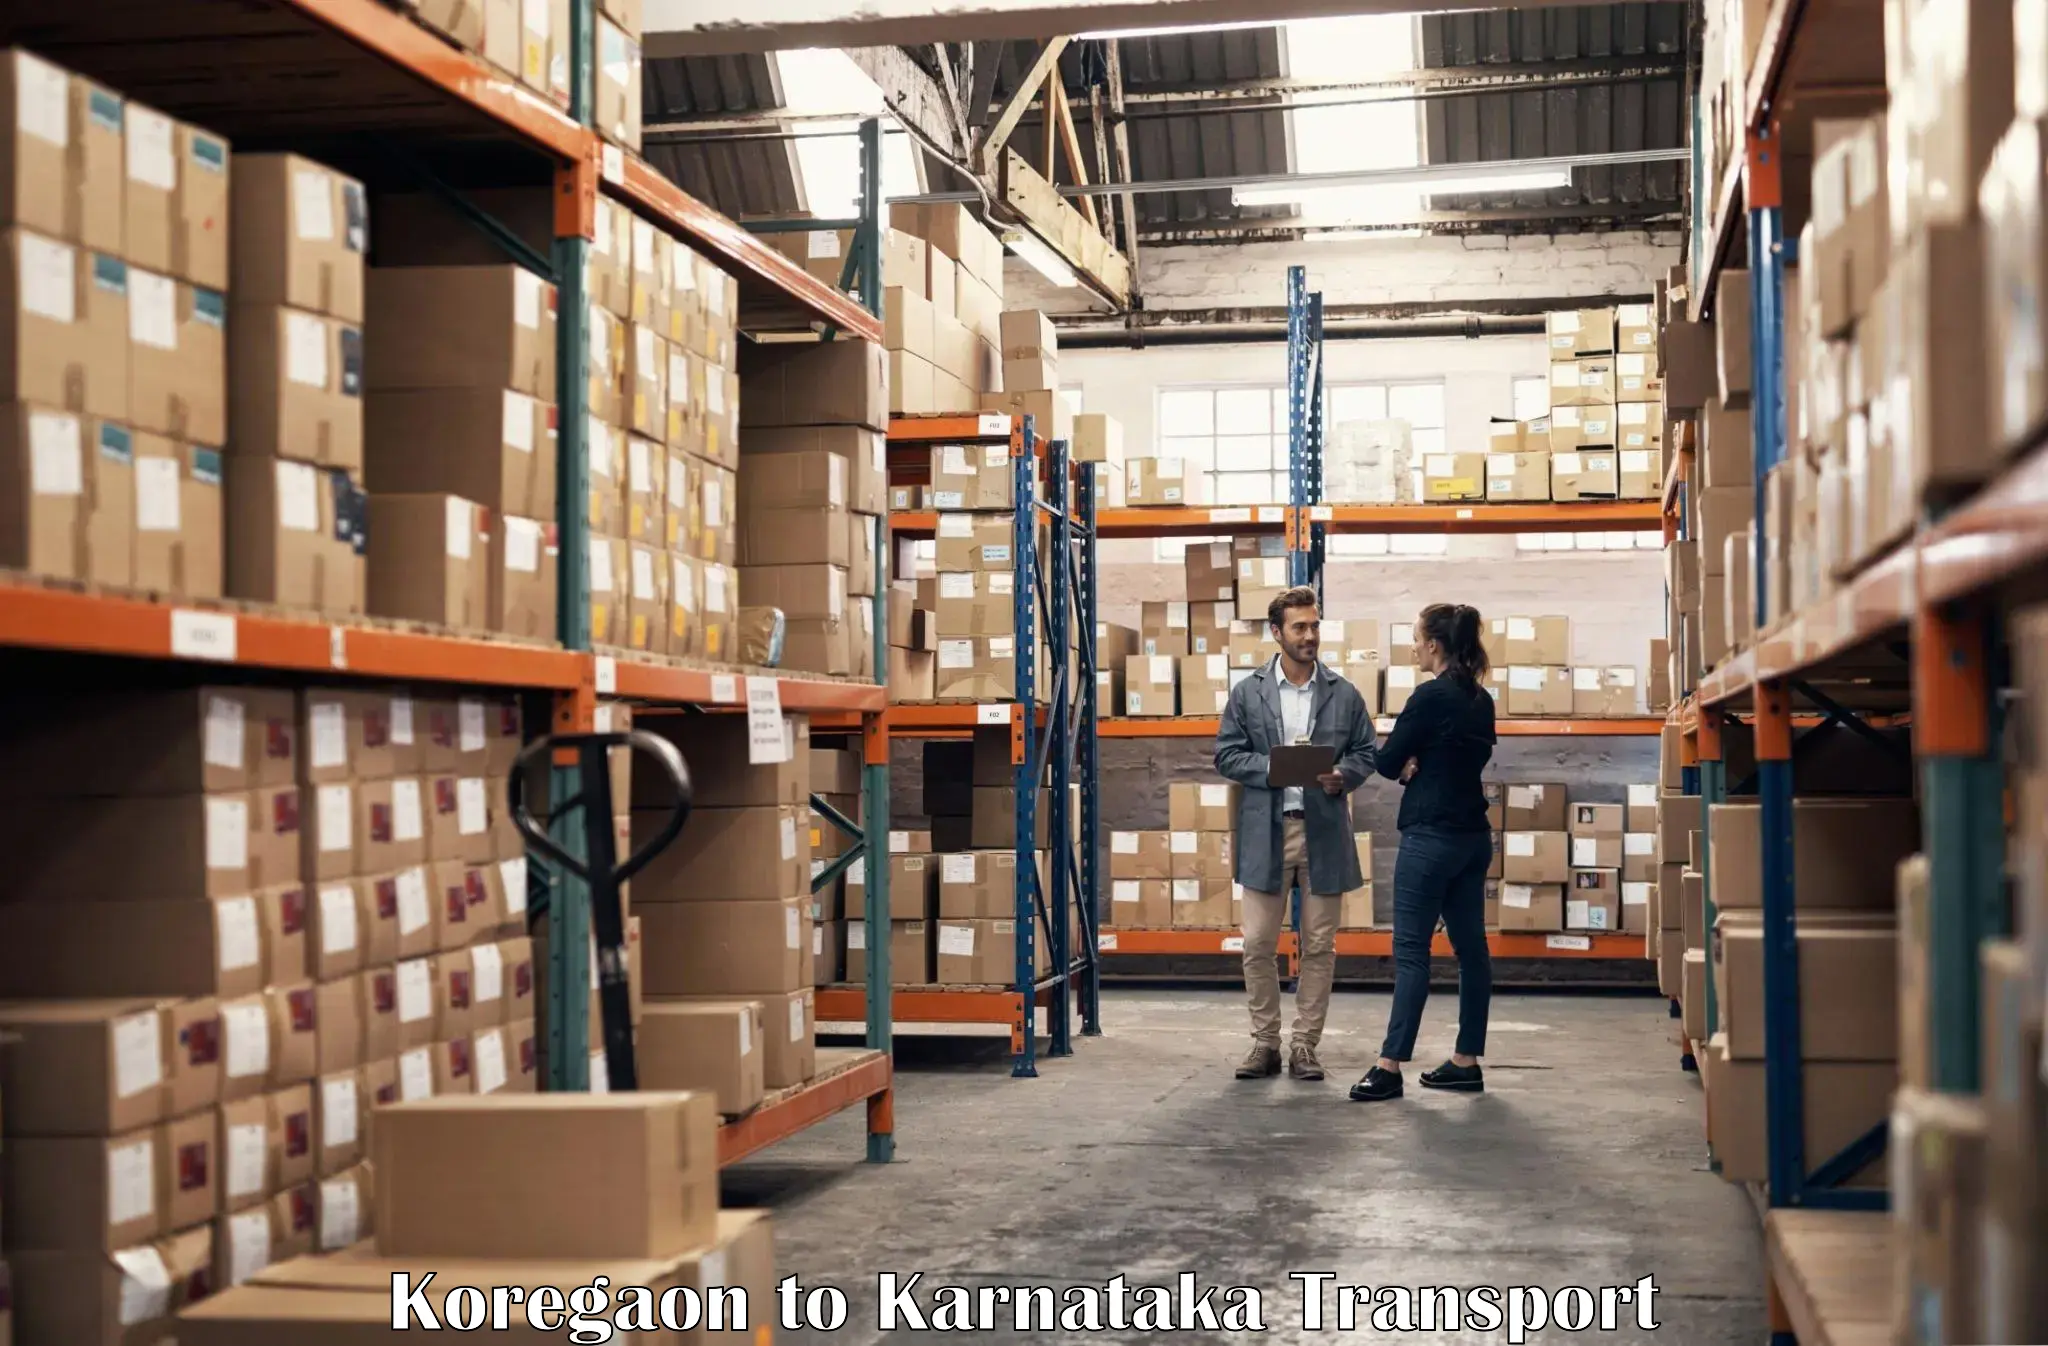 Online transport booking Koregaon to Bangarapet